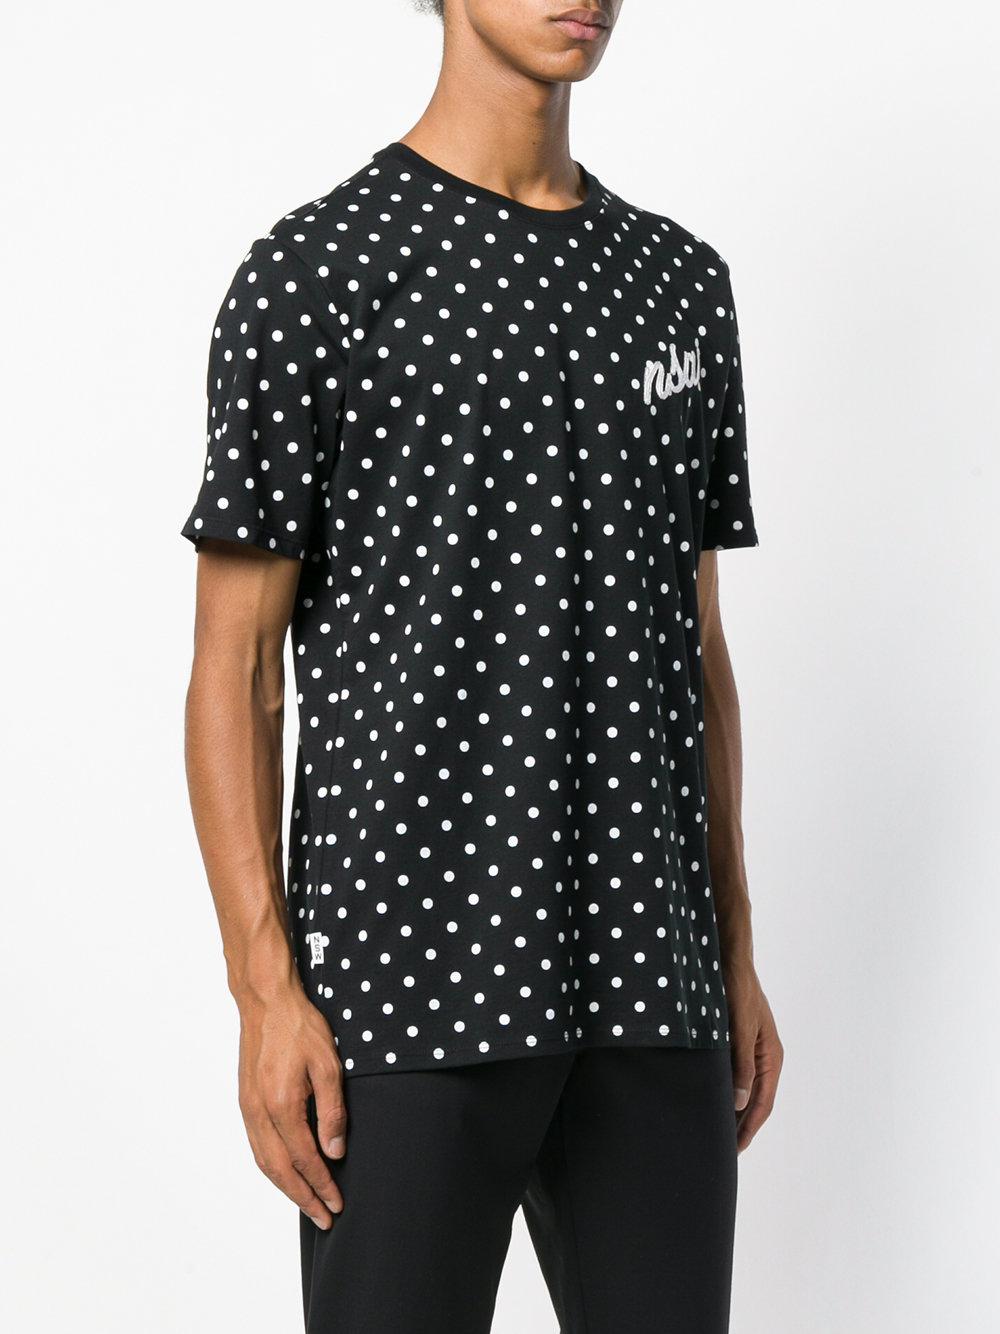 Nike Sportswear Nsw Polka Dot T-shirt in Black for Men - Lyst